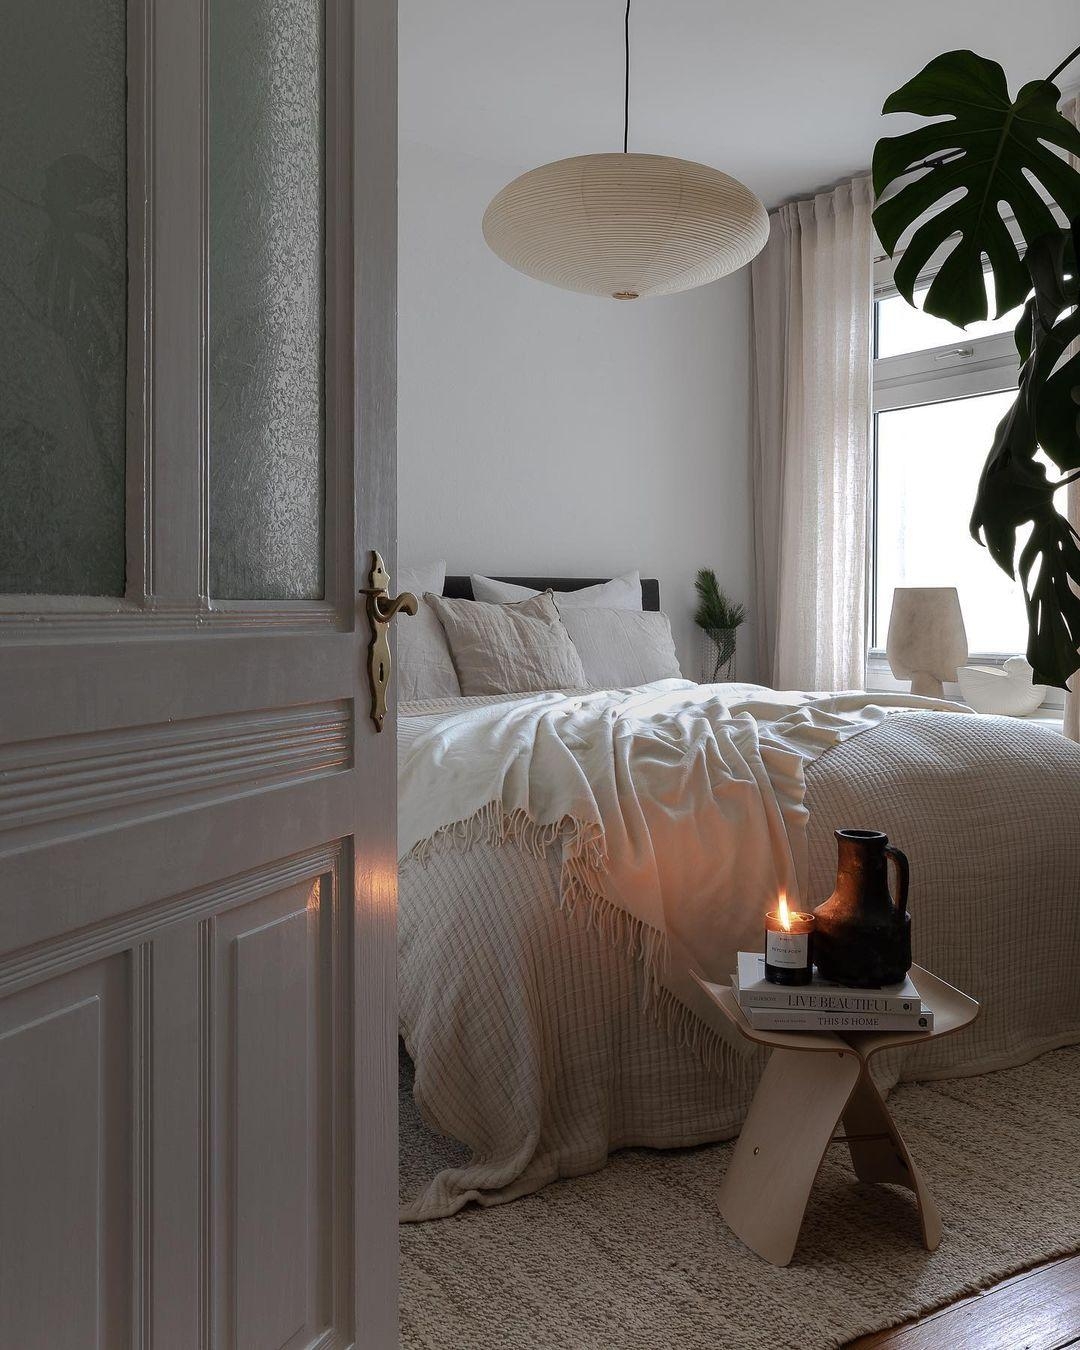 Neue #Leuchte ist im #Schlafzimmer eingezogen.

#vitra #bedroom #bett #cozy #gemütlich #hocker #kerze #vase #urbanjungle